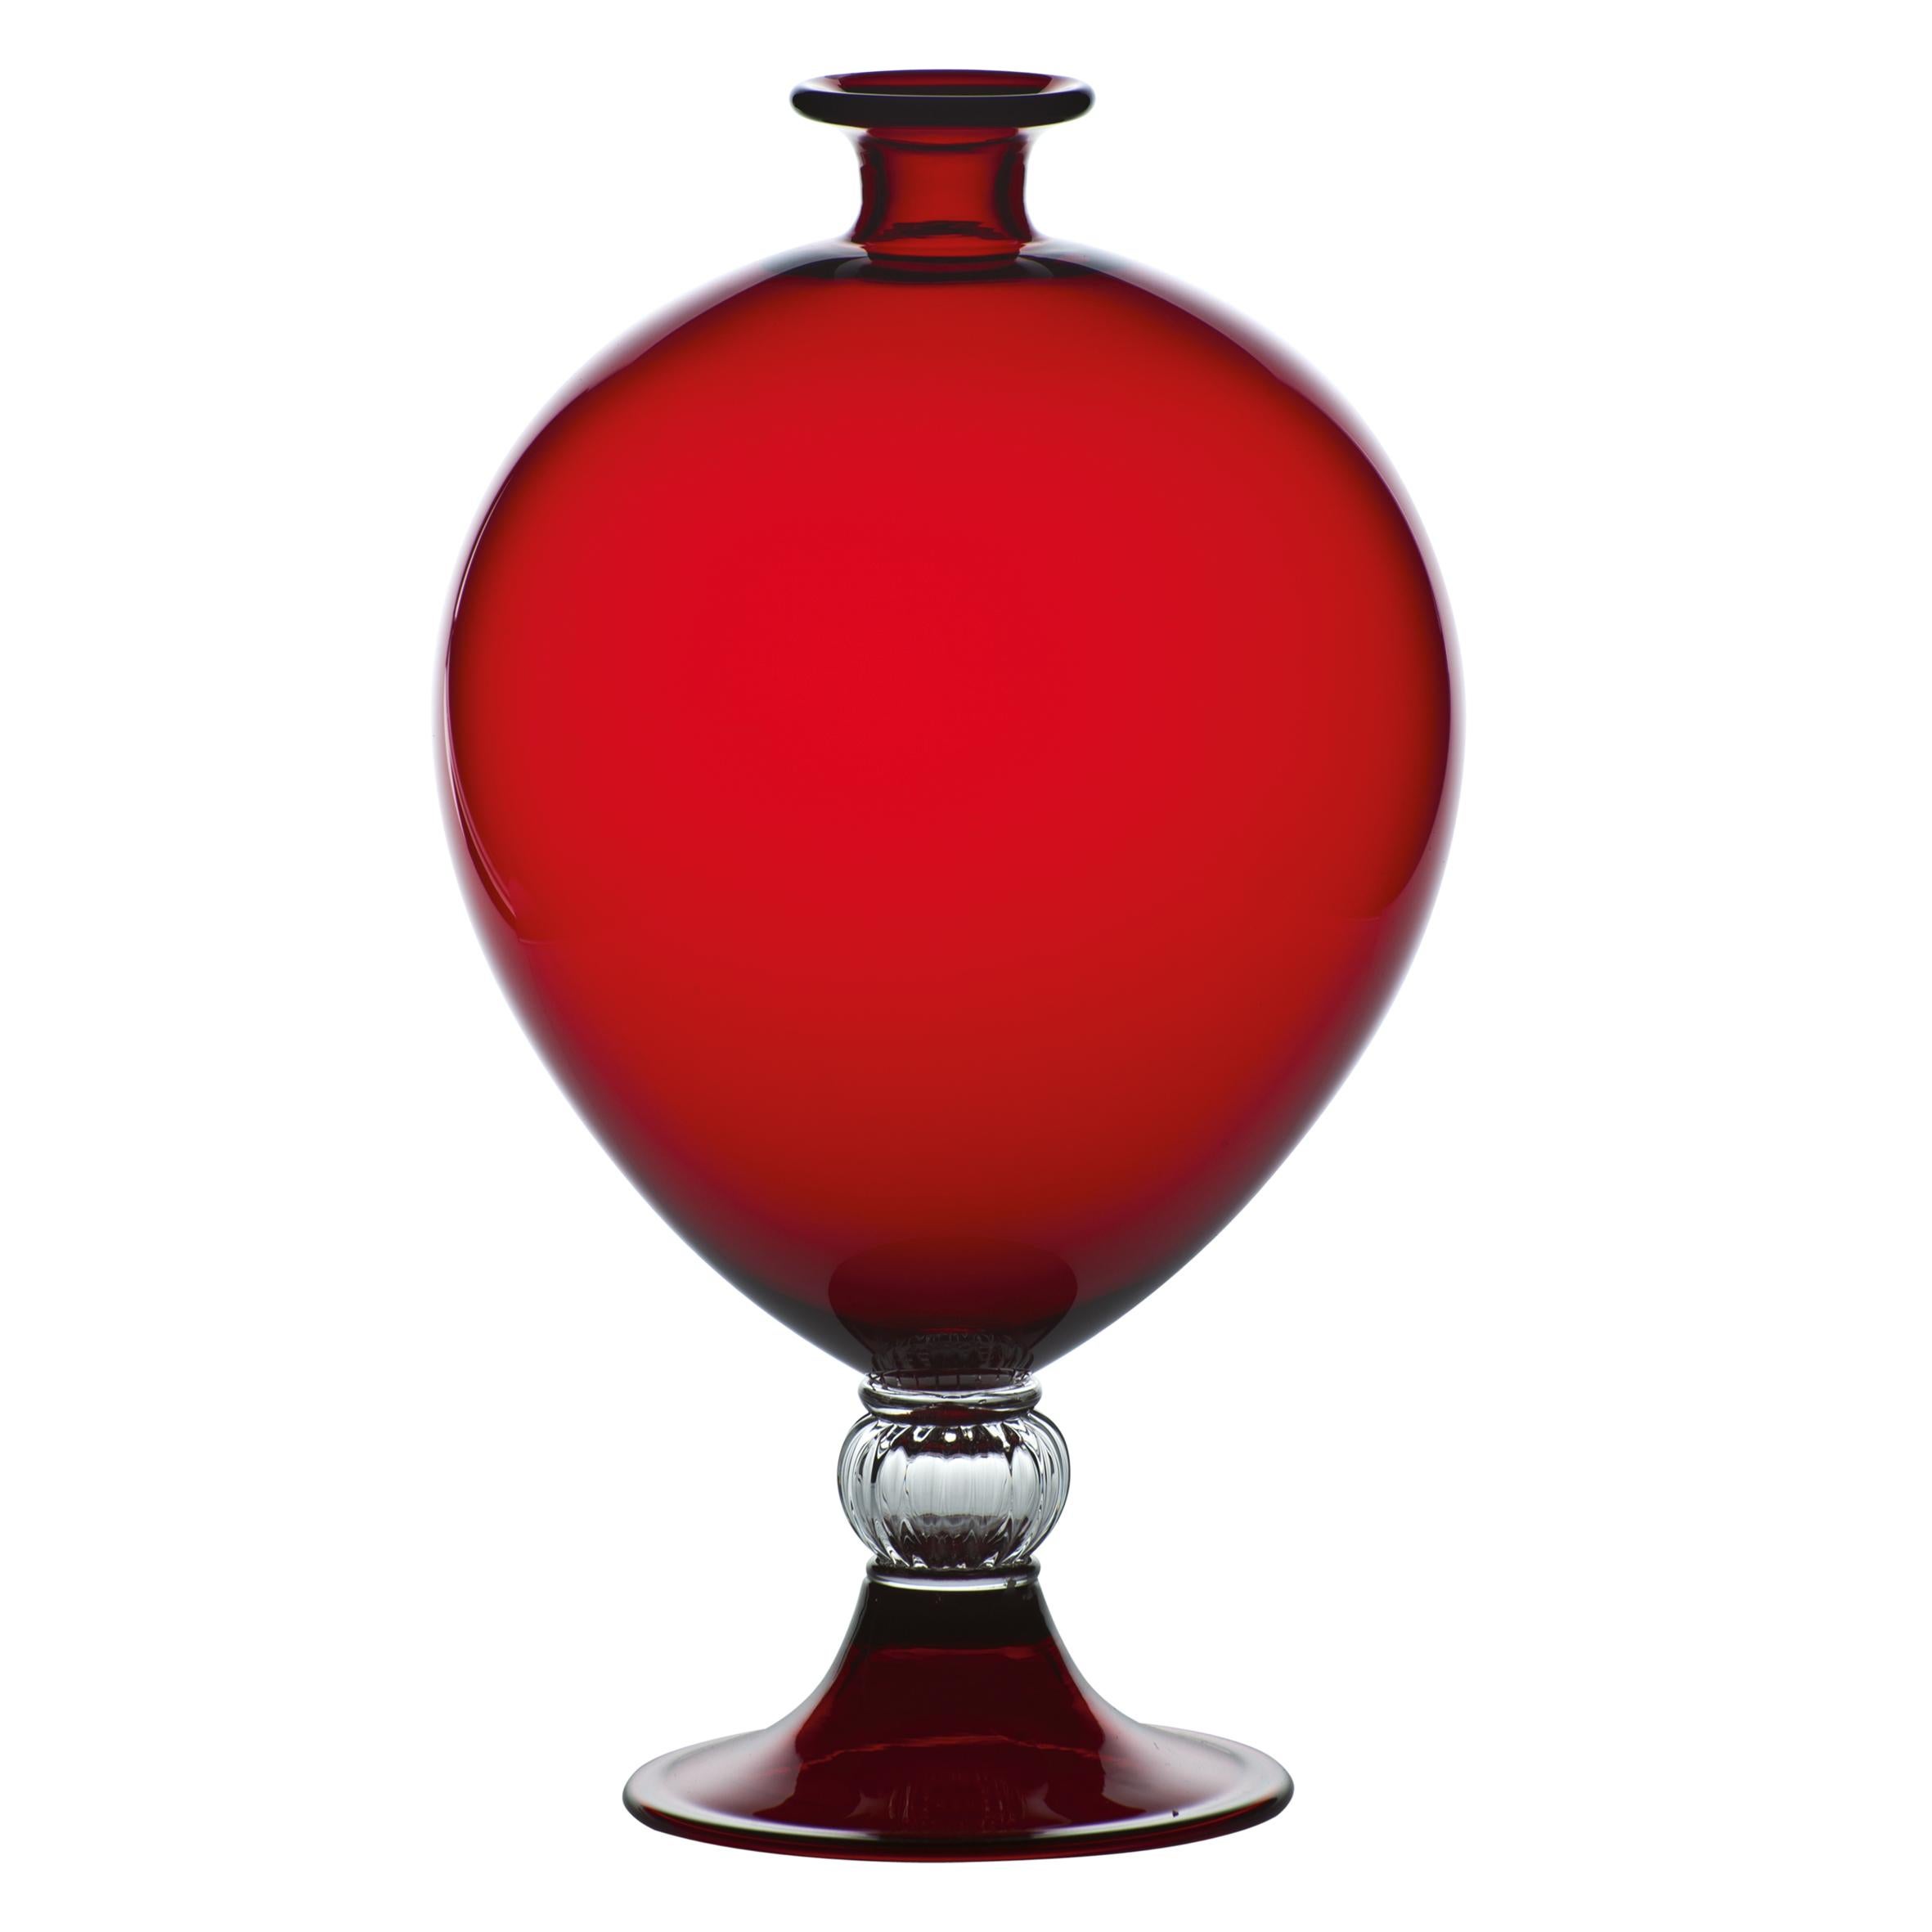 Venini Glasvase mit zylindrischem Körper und dekorativem Sockel aus Kristall. Featured in rot gefärbt Klasse mit Kristall im Jahr 1921 entworfen. Perfekt für die Inneneinrichtung als Behälter oder starkes Statement für jeden Raum.

Abmessungen: 20